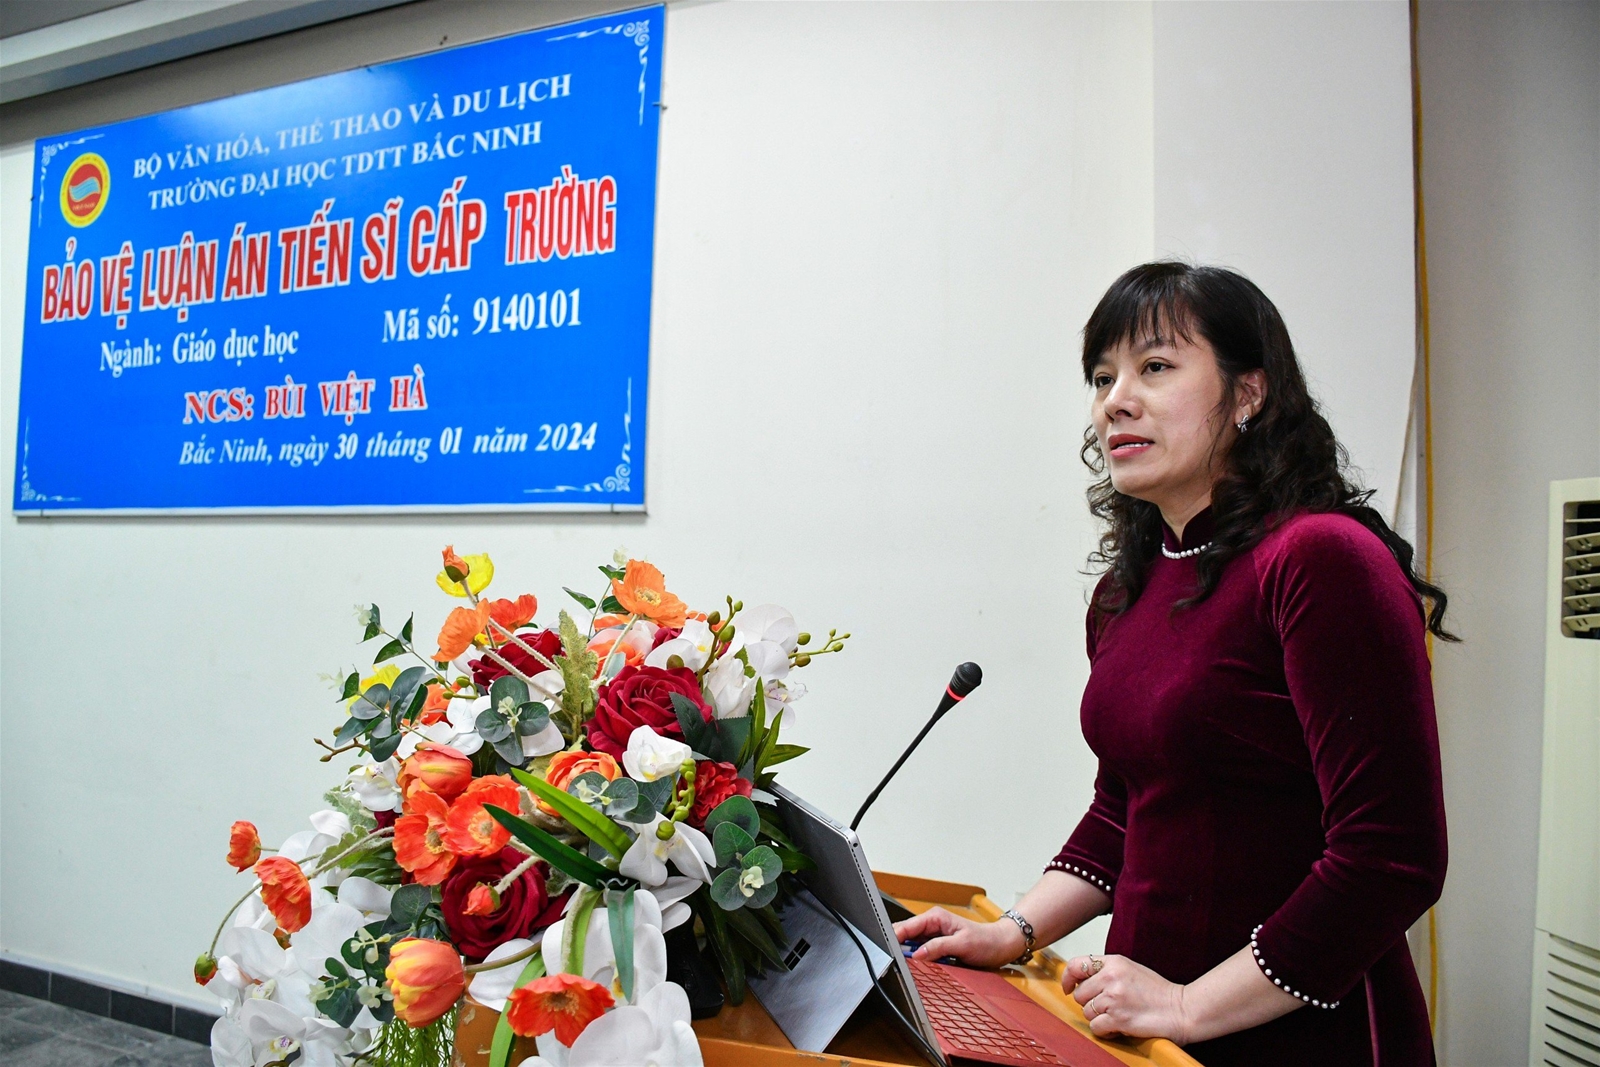 NCS Bùi Việt Hà vệ thành công luận án tiến sĩ cấp Trường